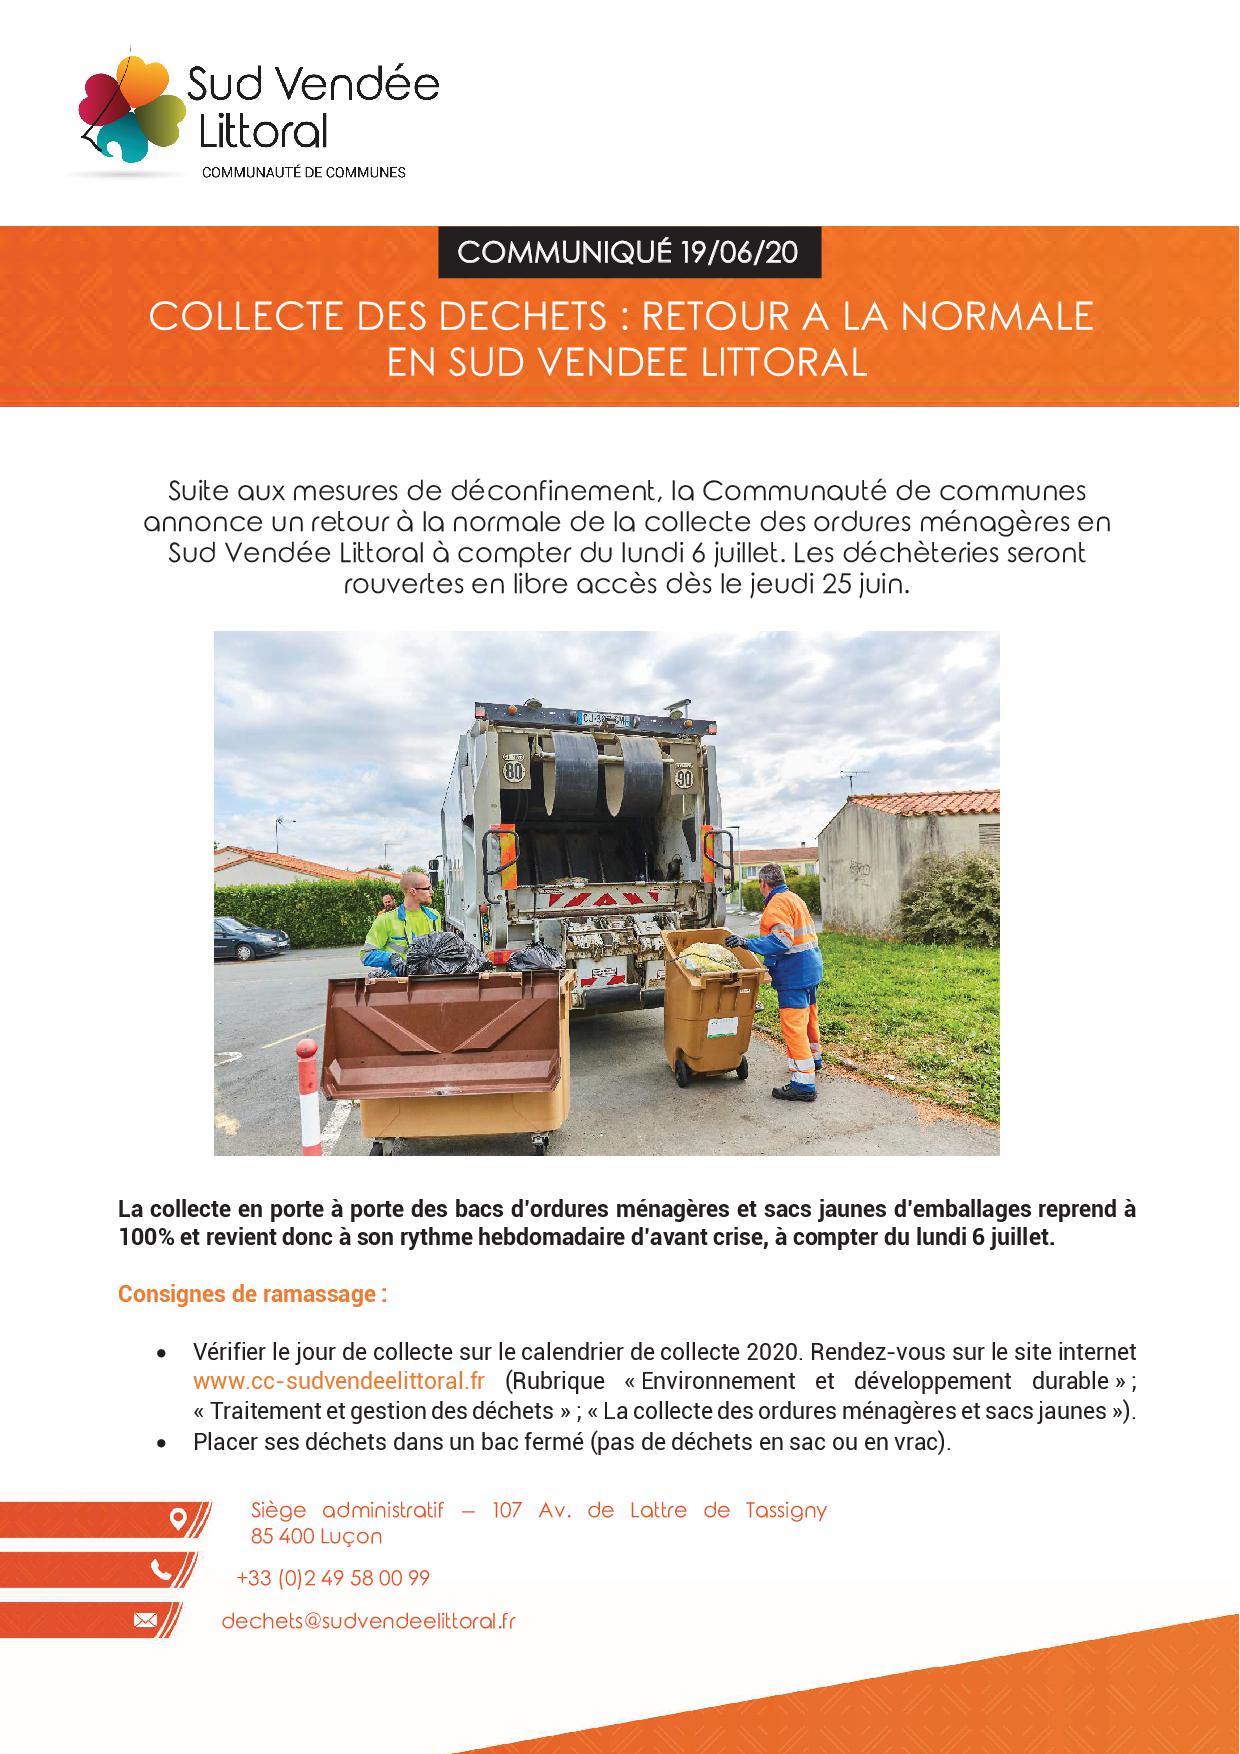 Collecte des déchets: retour à la normale en Sud Vendée Littoral